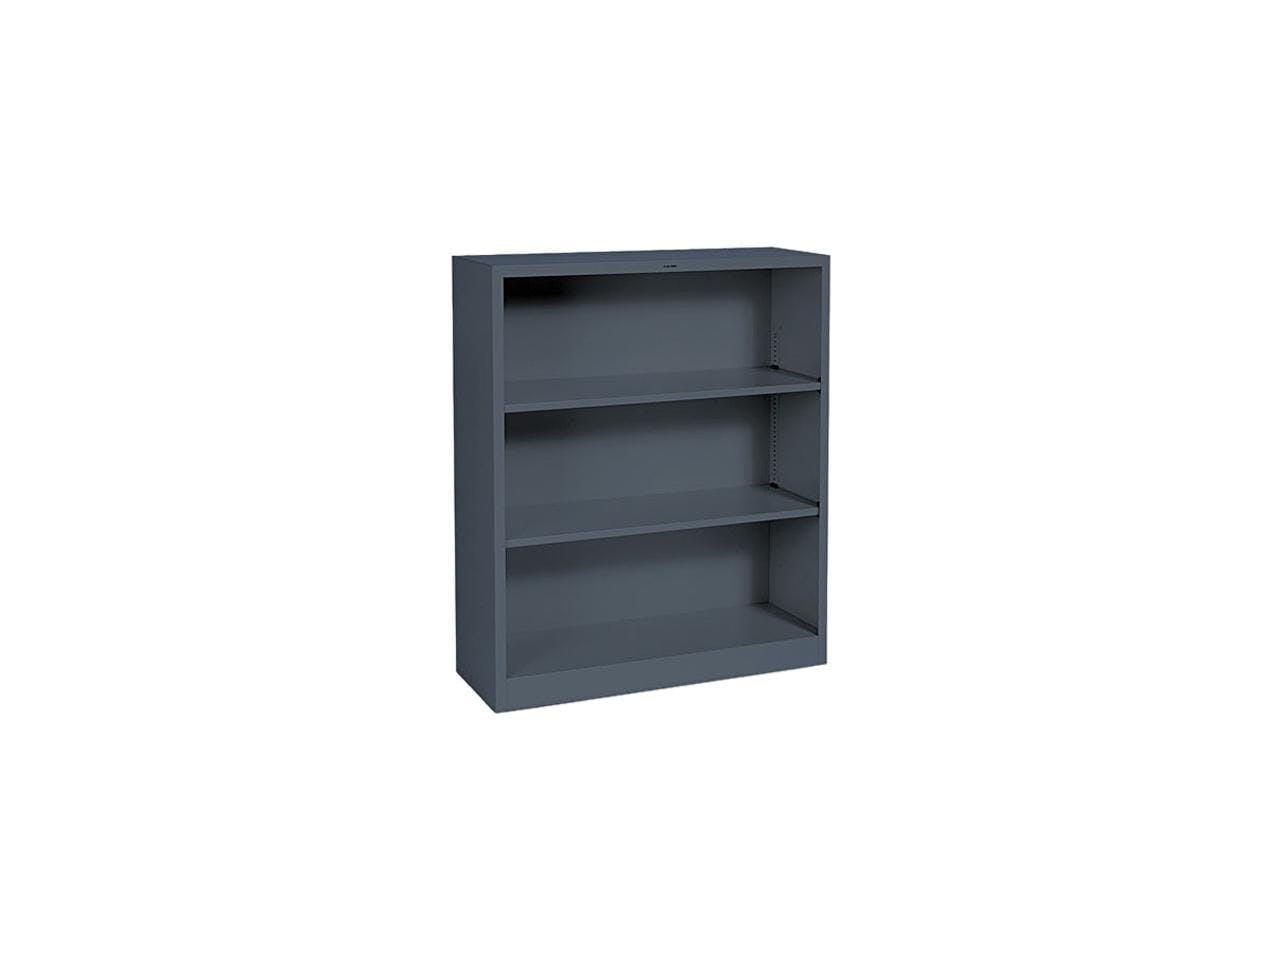 Charcoal Gray Steel 3-Shelf Adjustable Bookcase